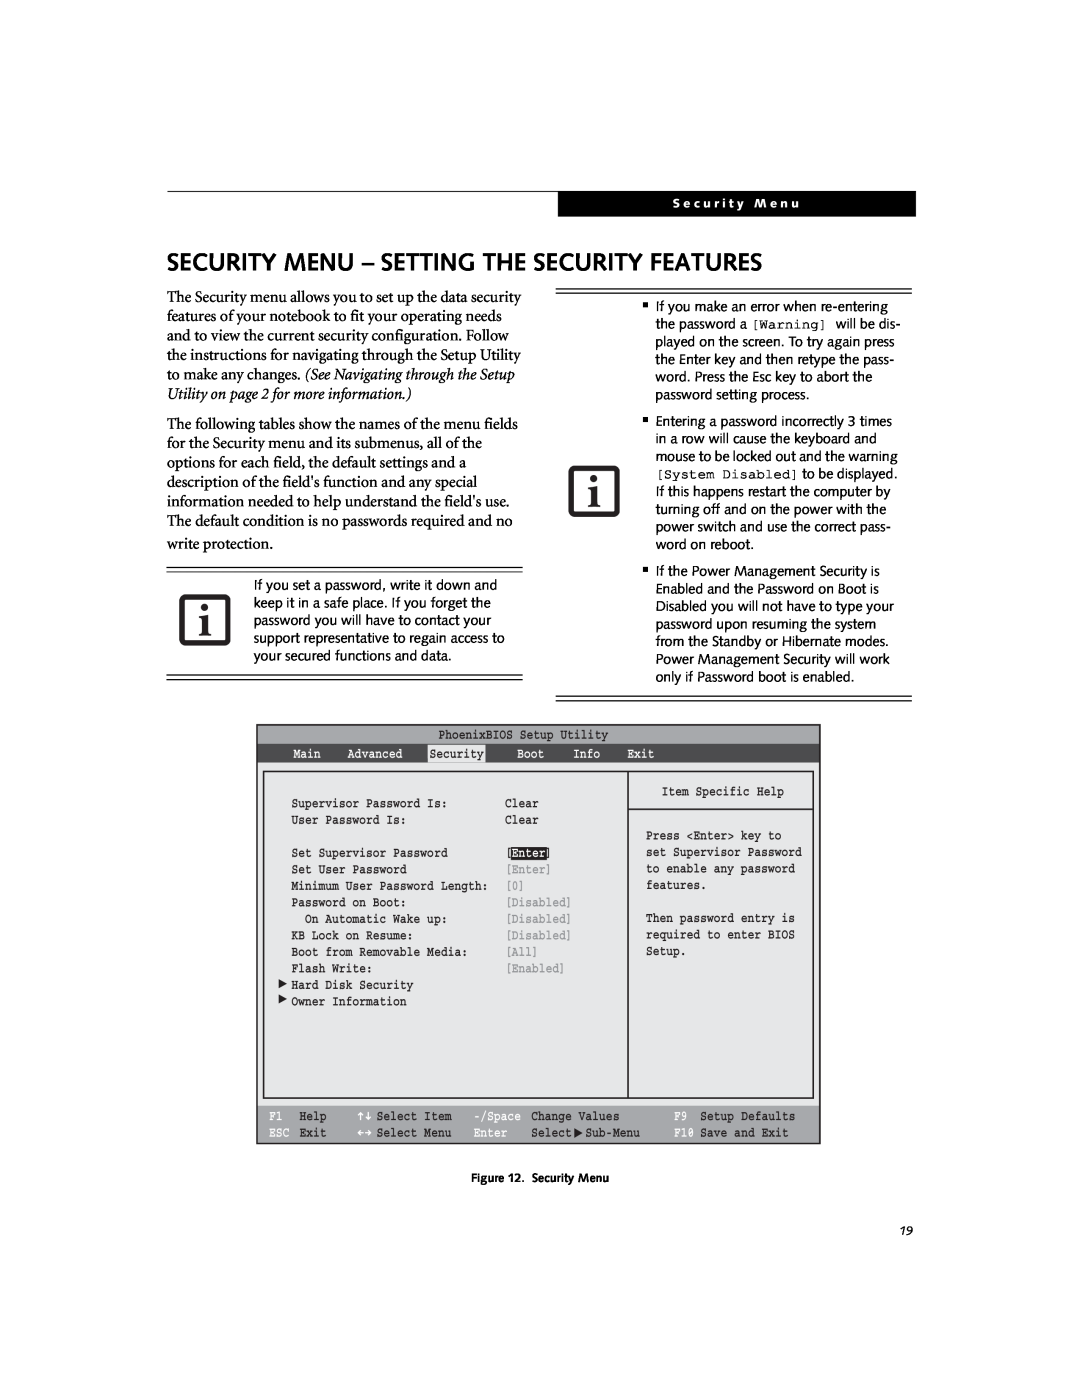 Fujitsu V1010 manual Security Menu - Setting The Security Features 